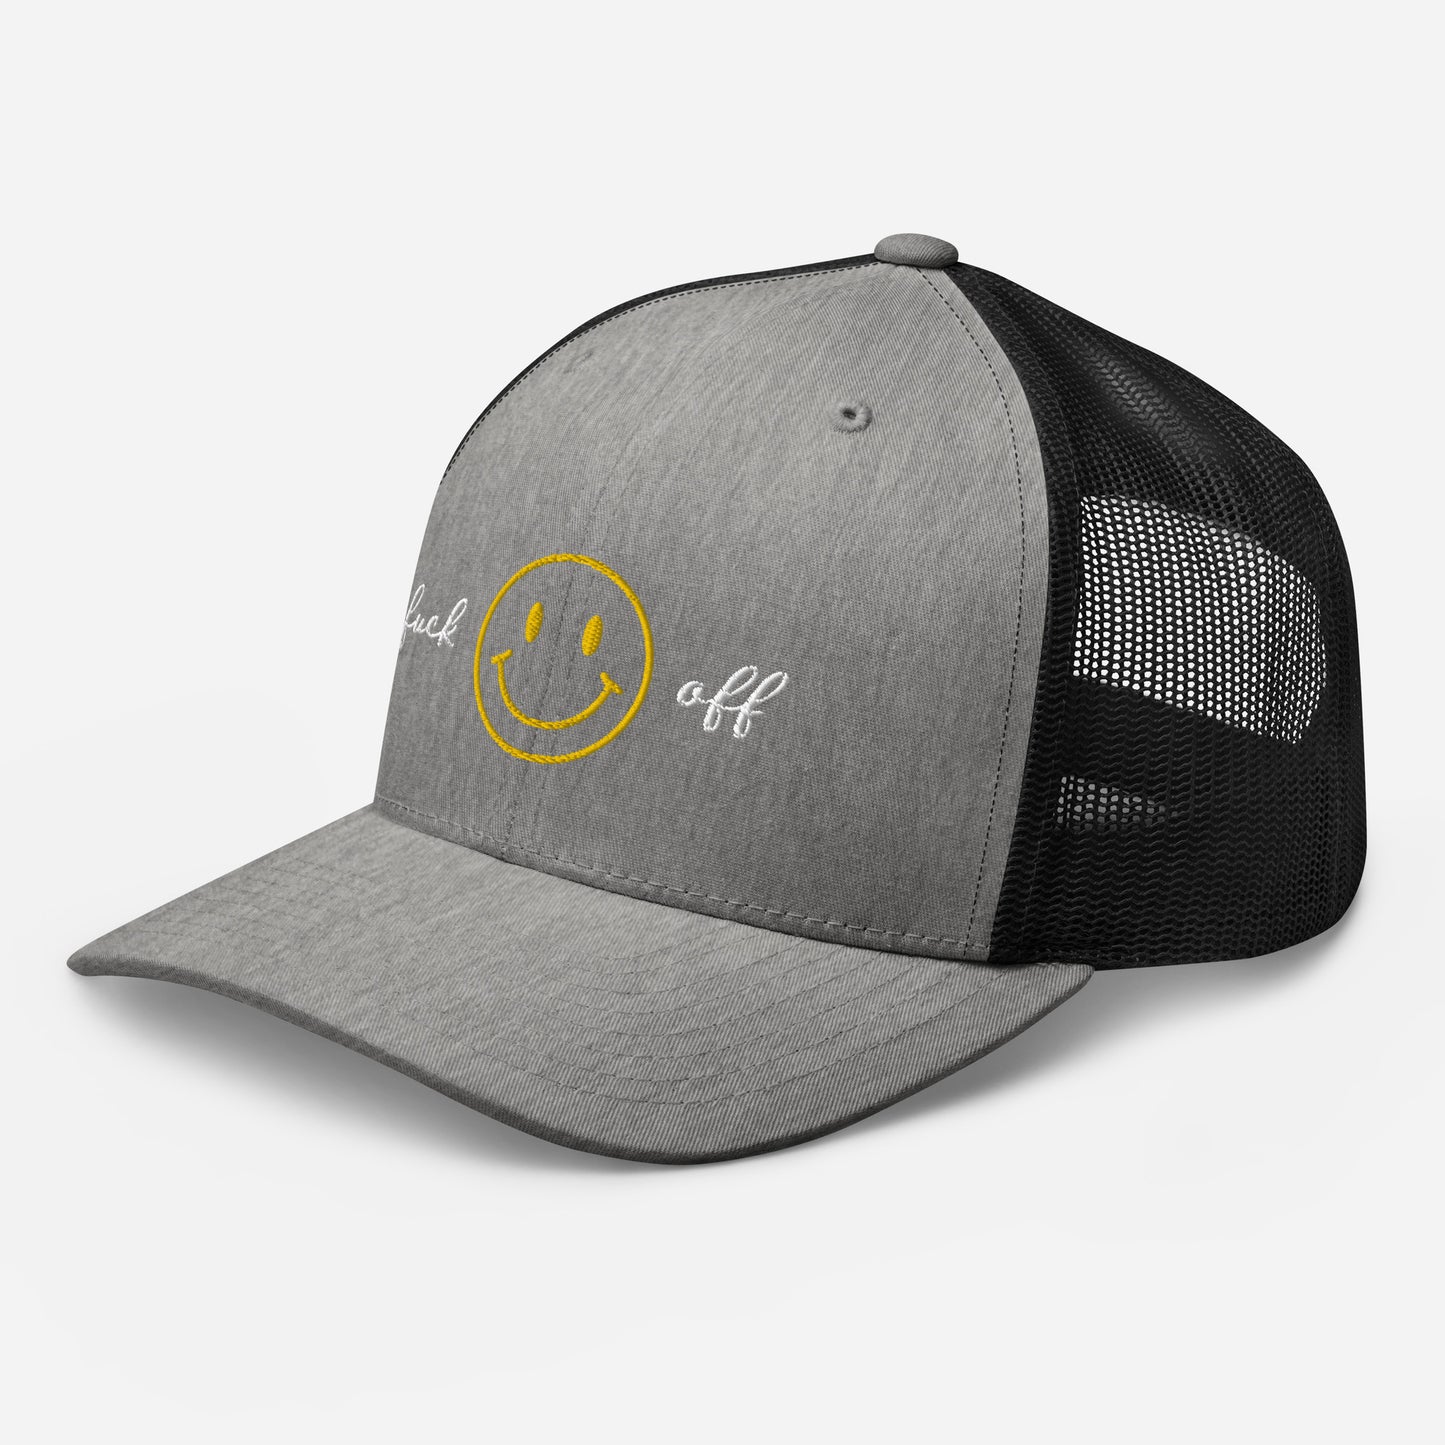 Fuck off | Retro Trucker Hat | Embroidered